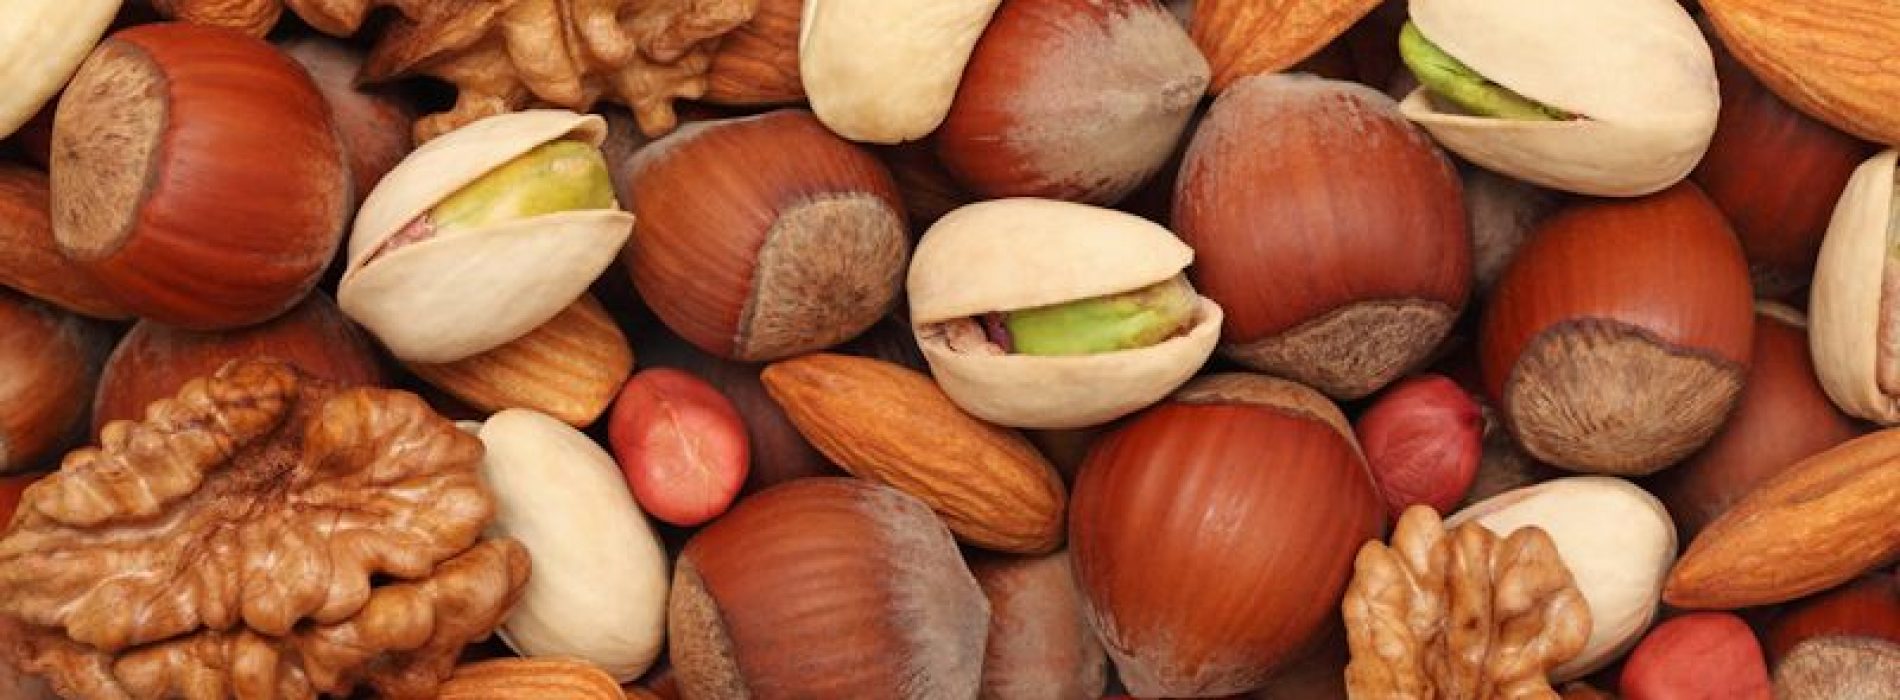 Handvol noten per dag om langer te leven